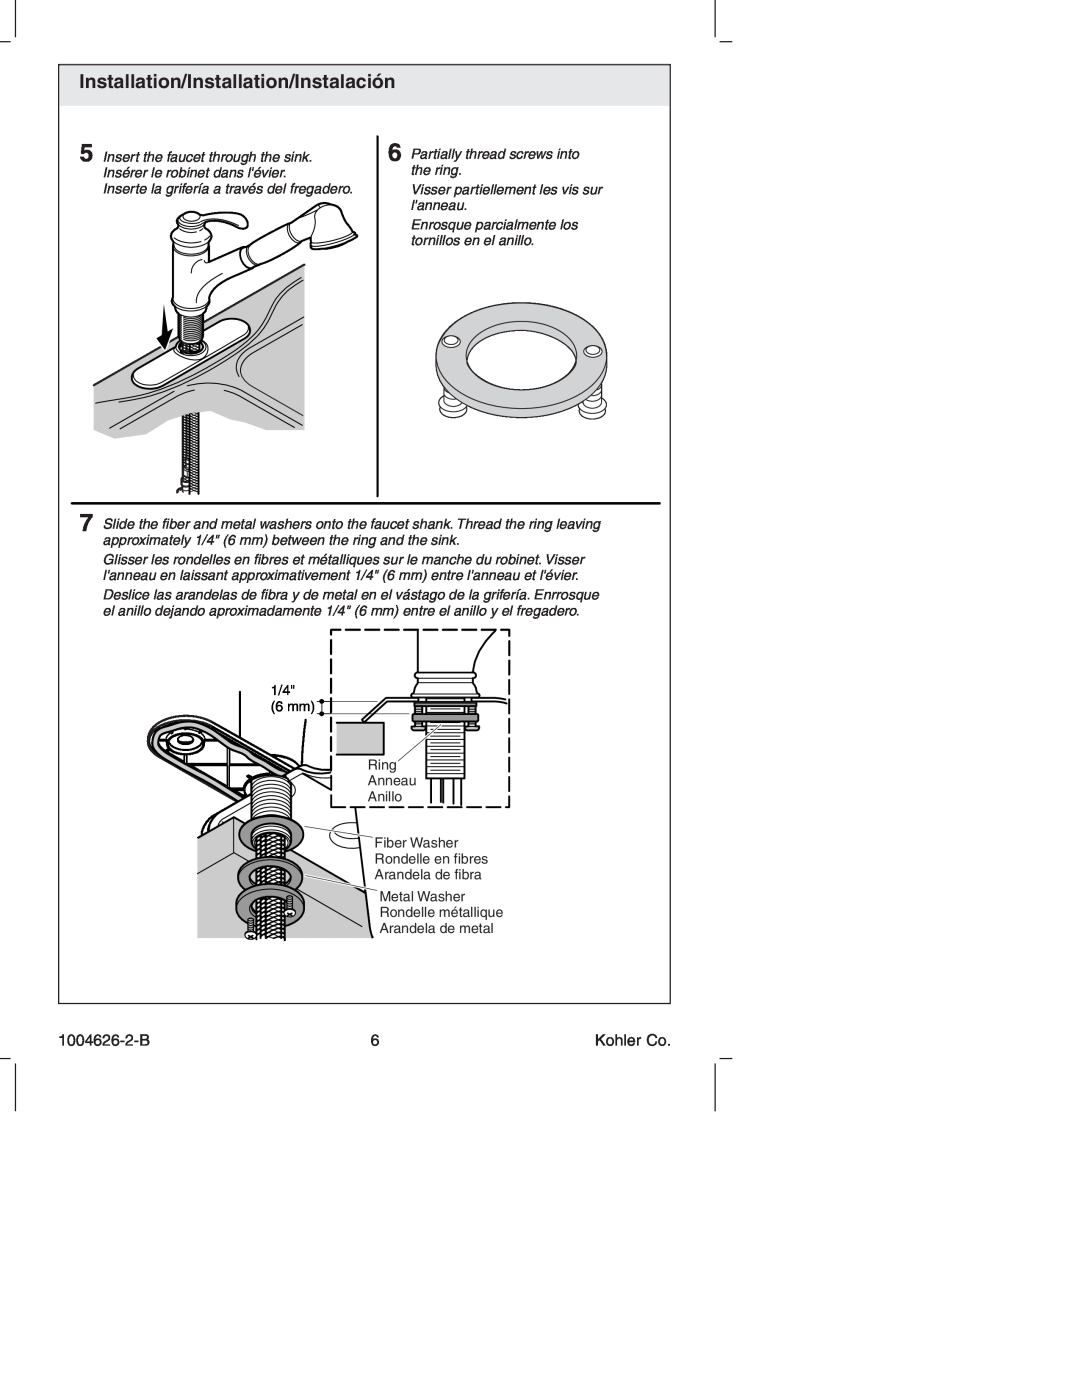 Kohler K-12177 manual Installation/Installation/Instalación, 1004626-2-B, Insert the faucet through the sink 